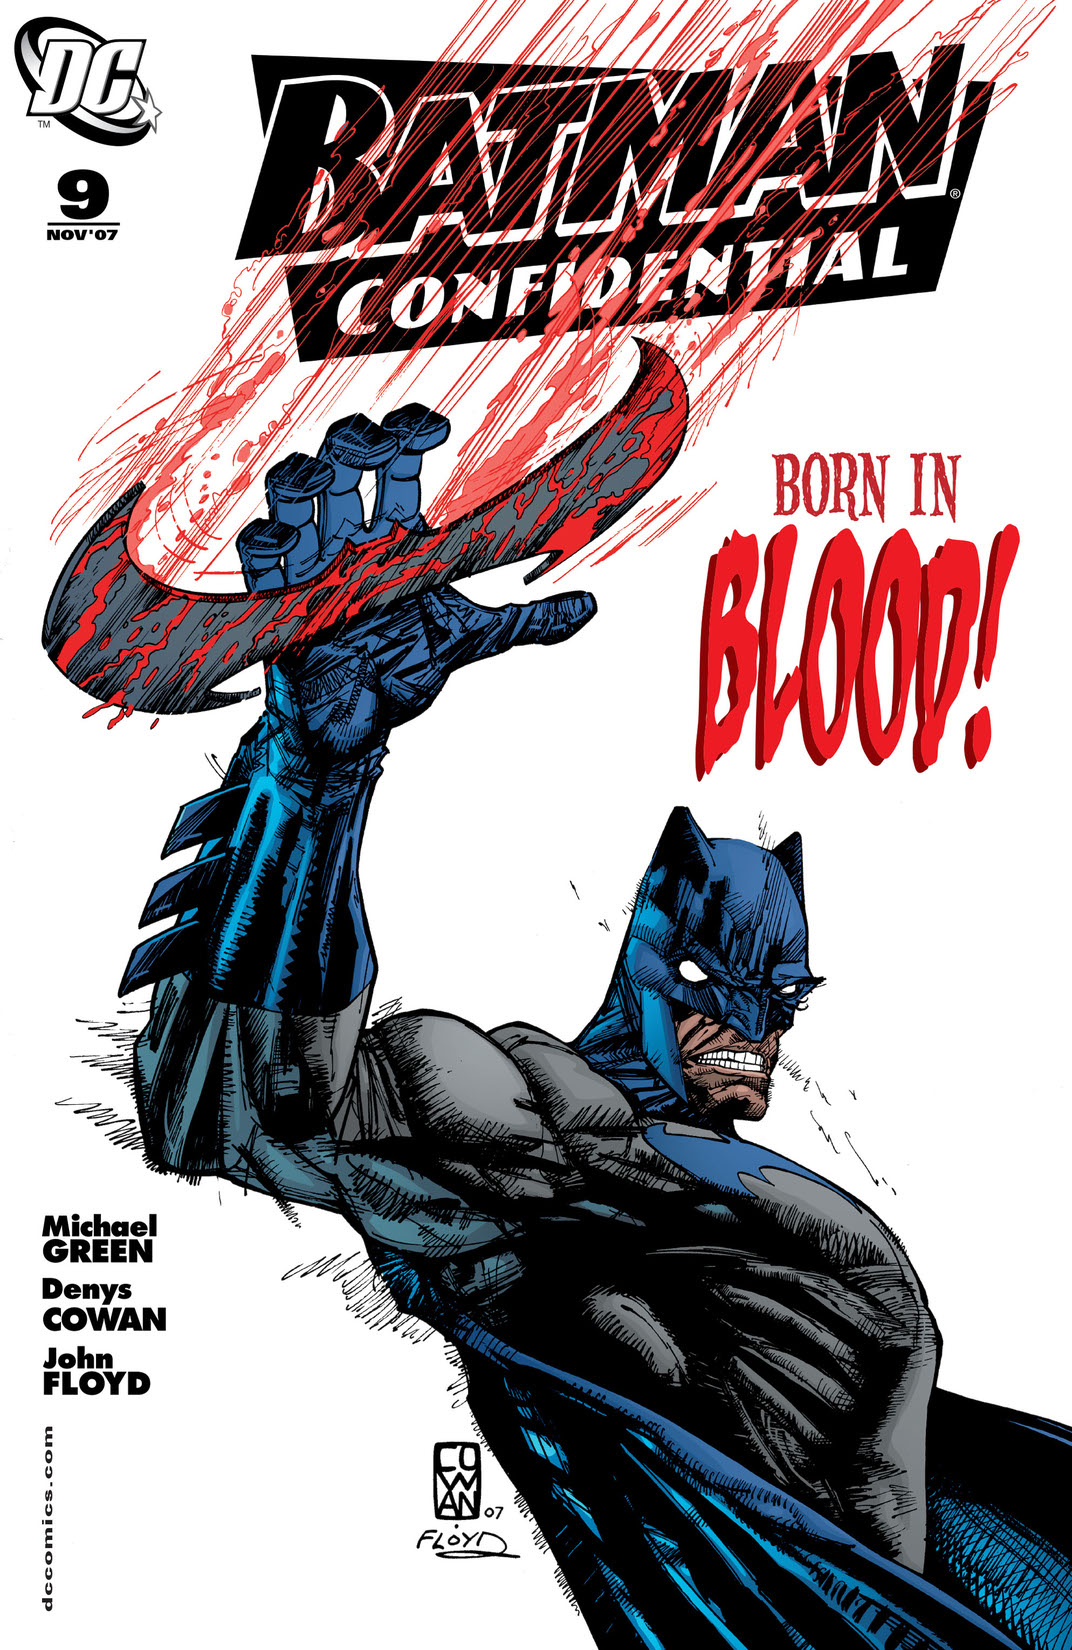 Batman Confidential #9 preview images